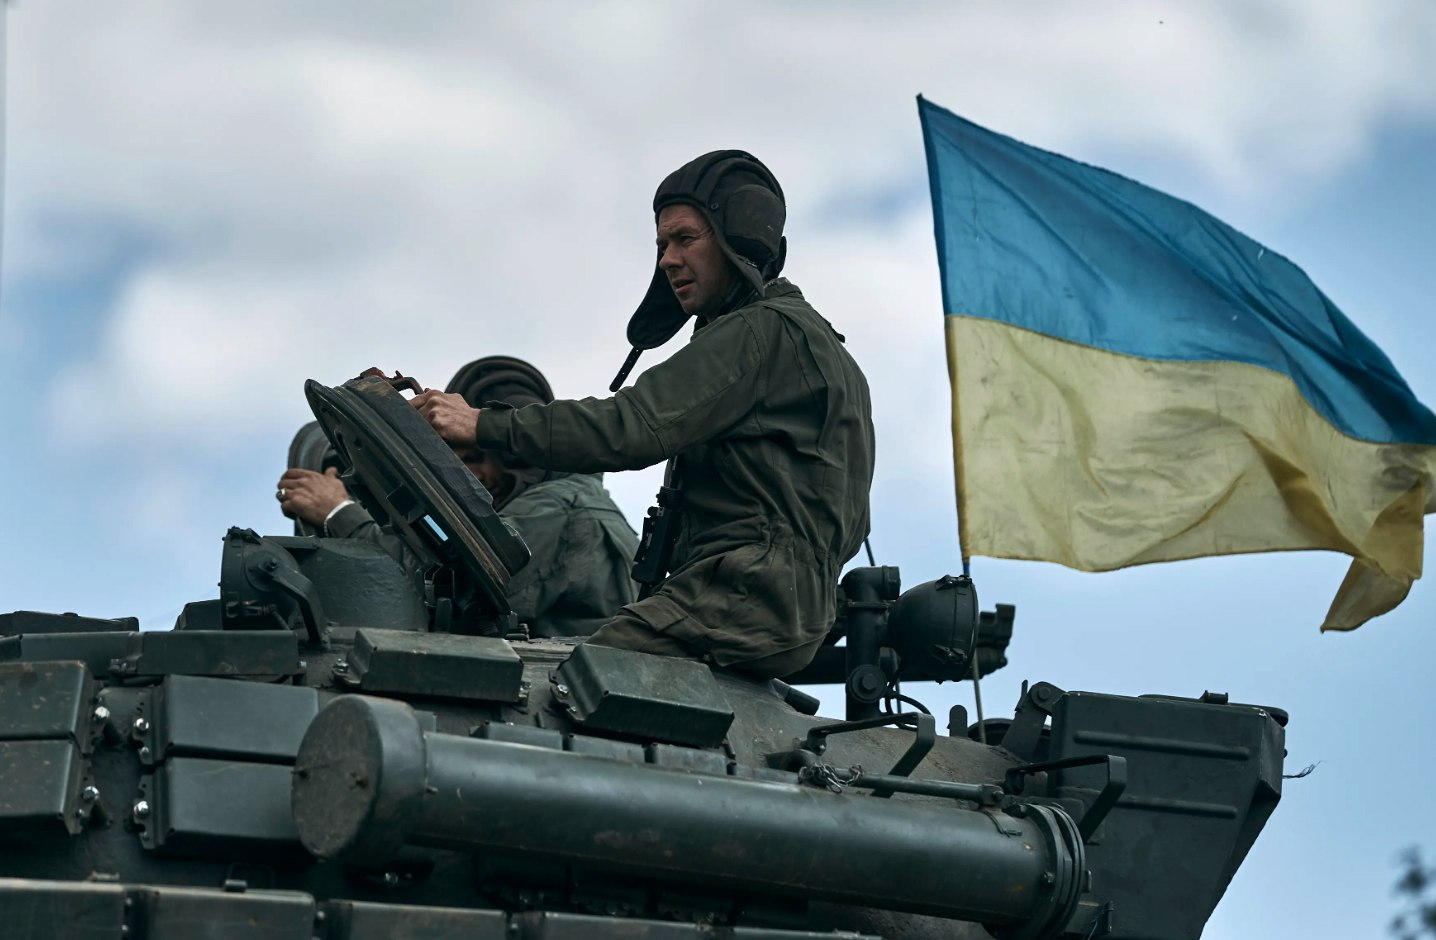 Воздушные атаки России усилились, Украина перешла в контрнаступление - ВИДЕО